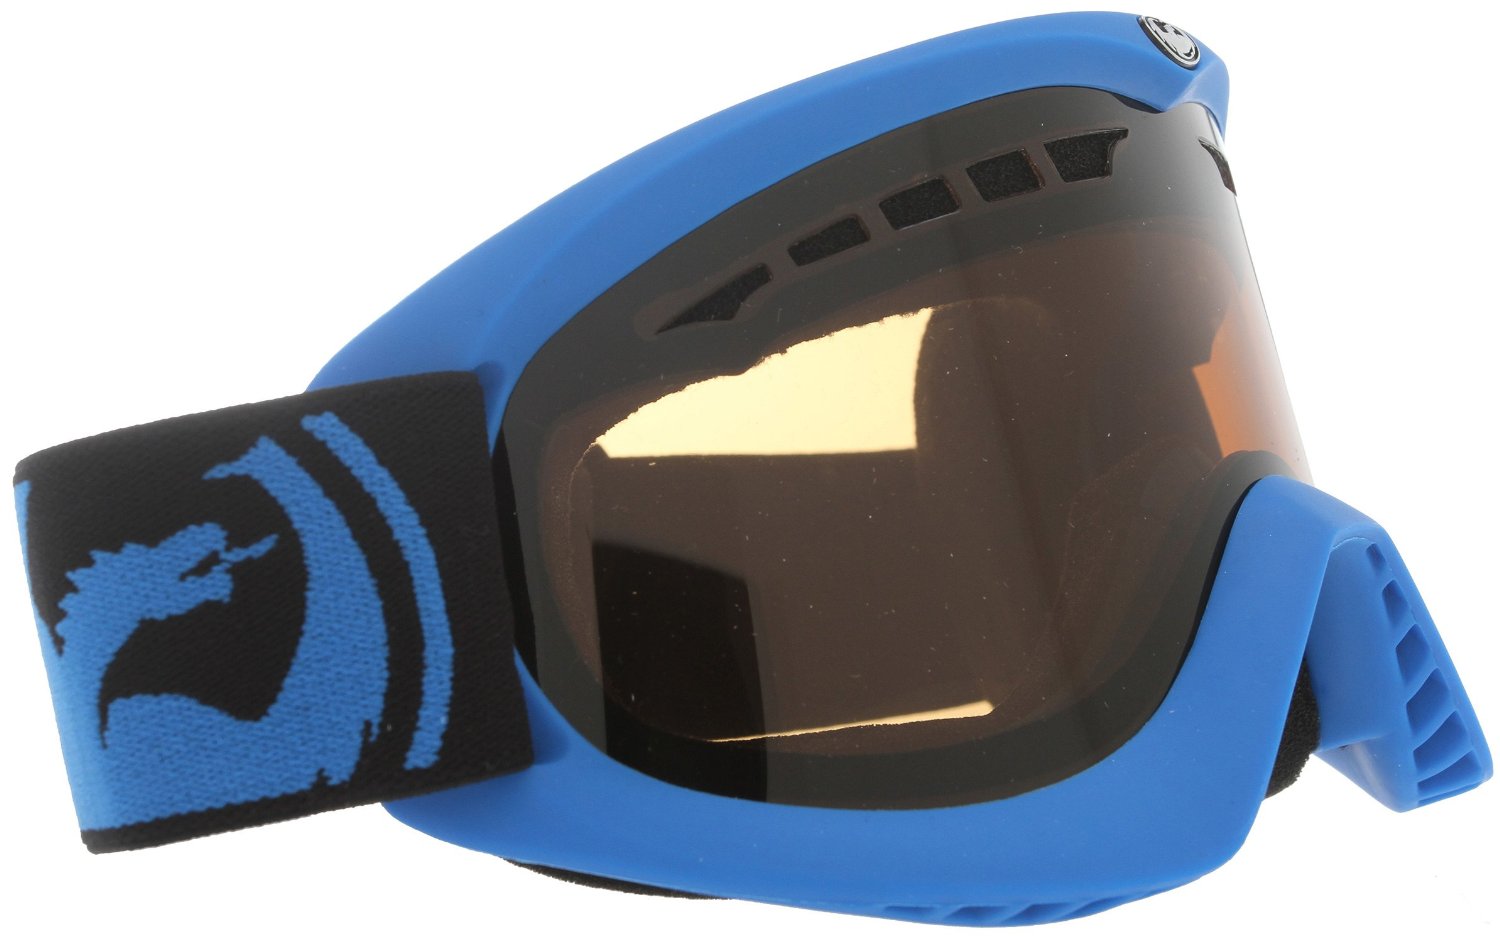 Dragon Alliance - Сноубордическая маска DXs (оправа Pop Blue, линзы Jet)